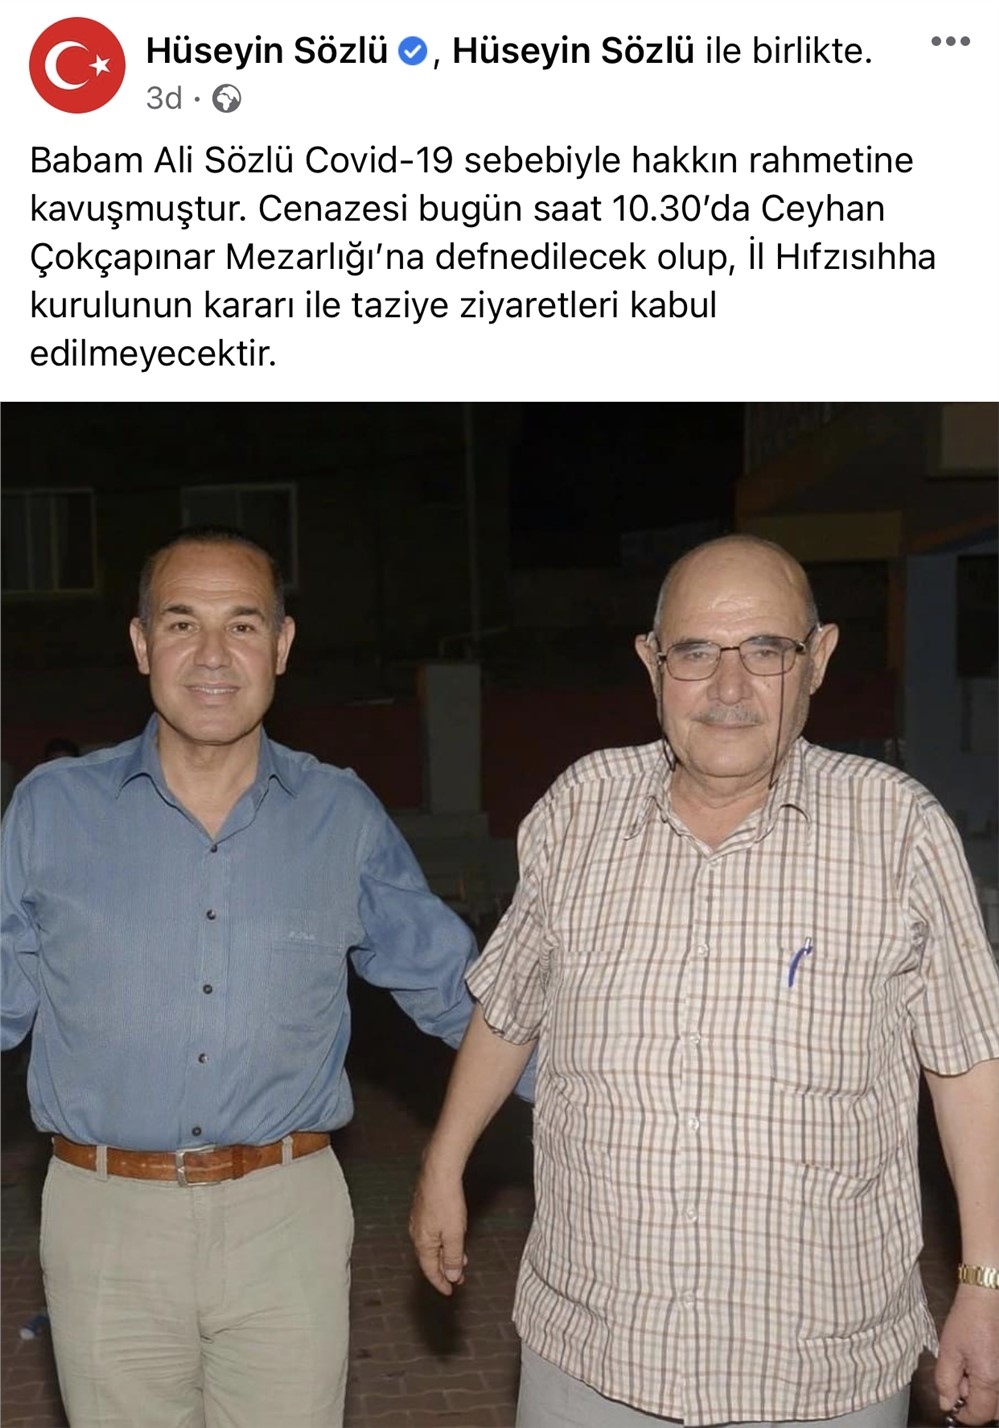 Adana Büyükşehir Belediyesi Eski Başkanı Hüseyin Sözlü’nün Babası Covid-19 Nedeniyle Vefat Etti